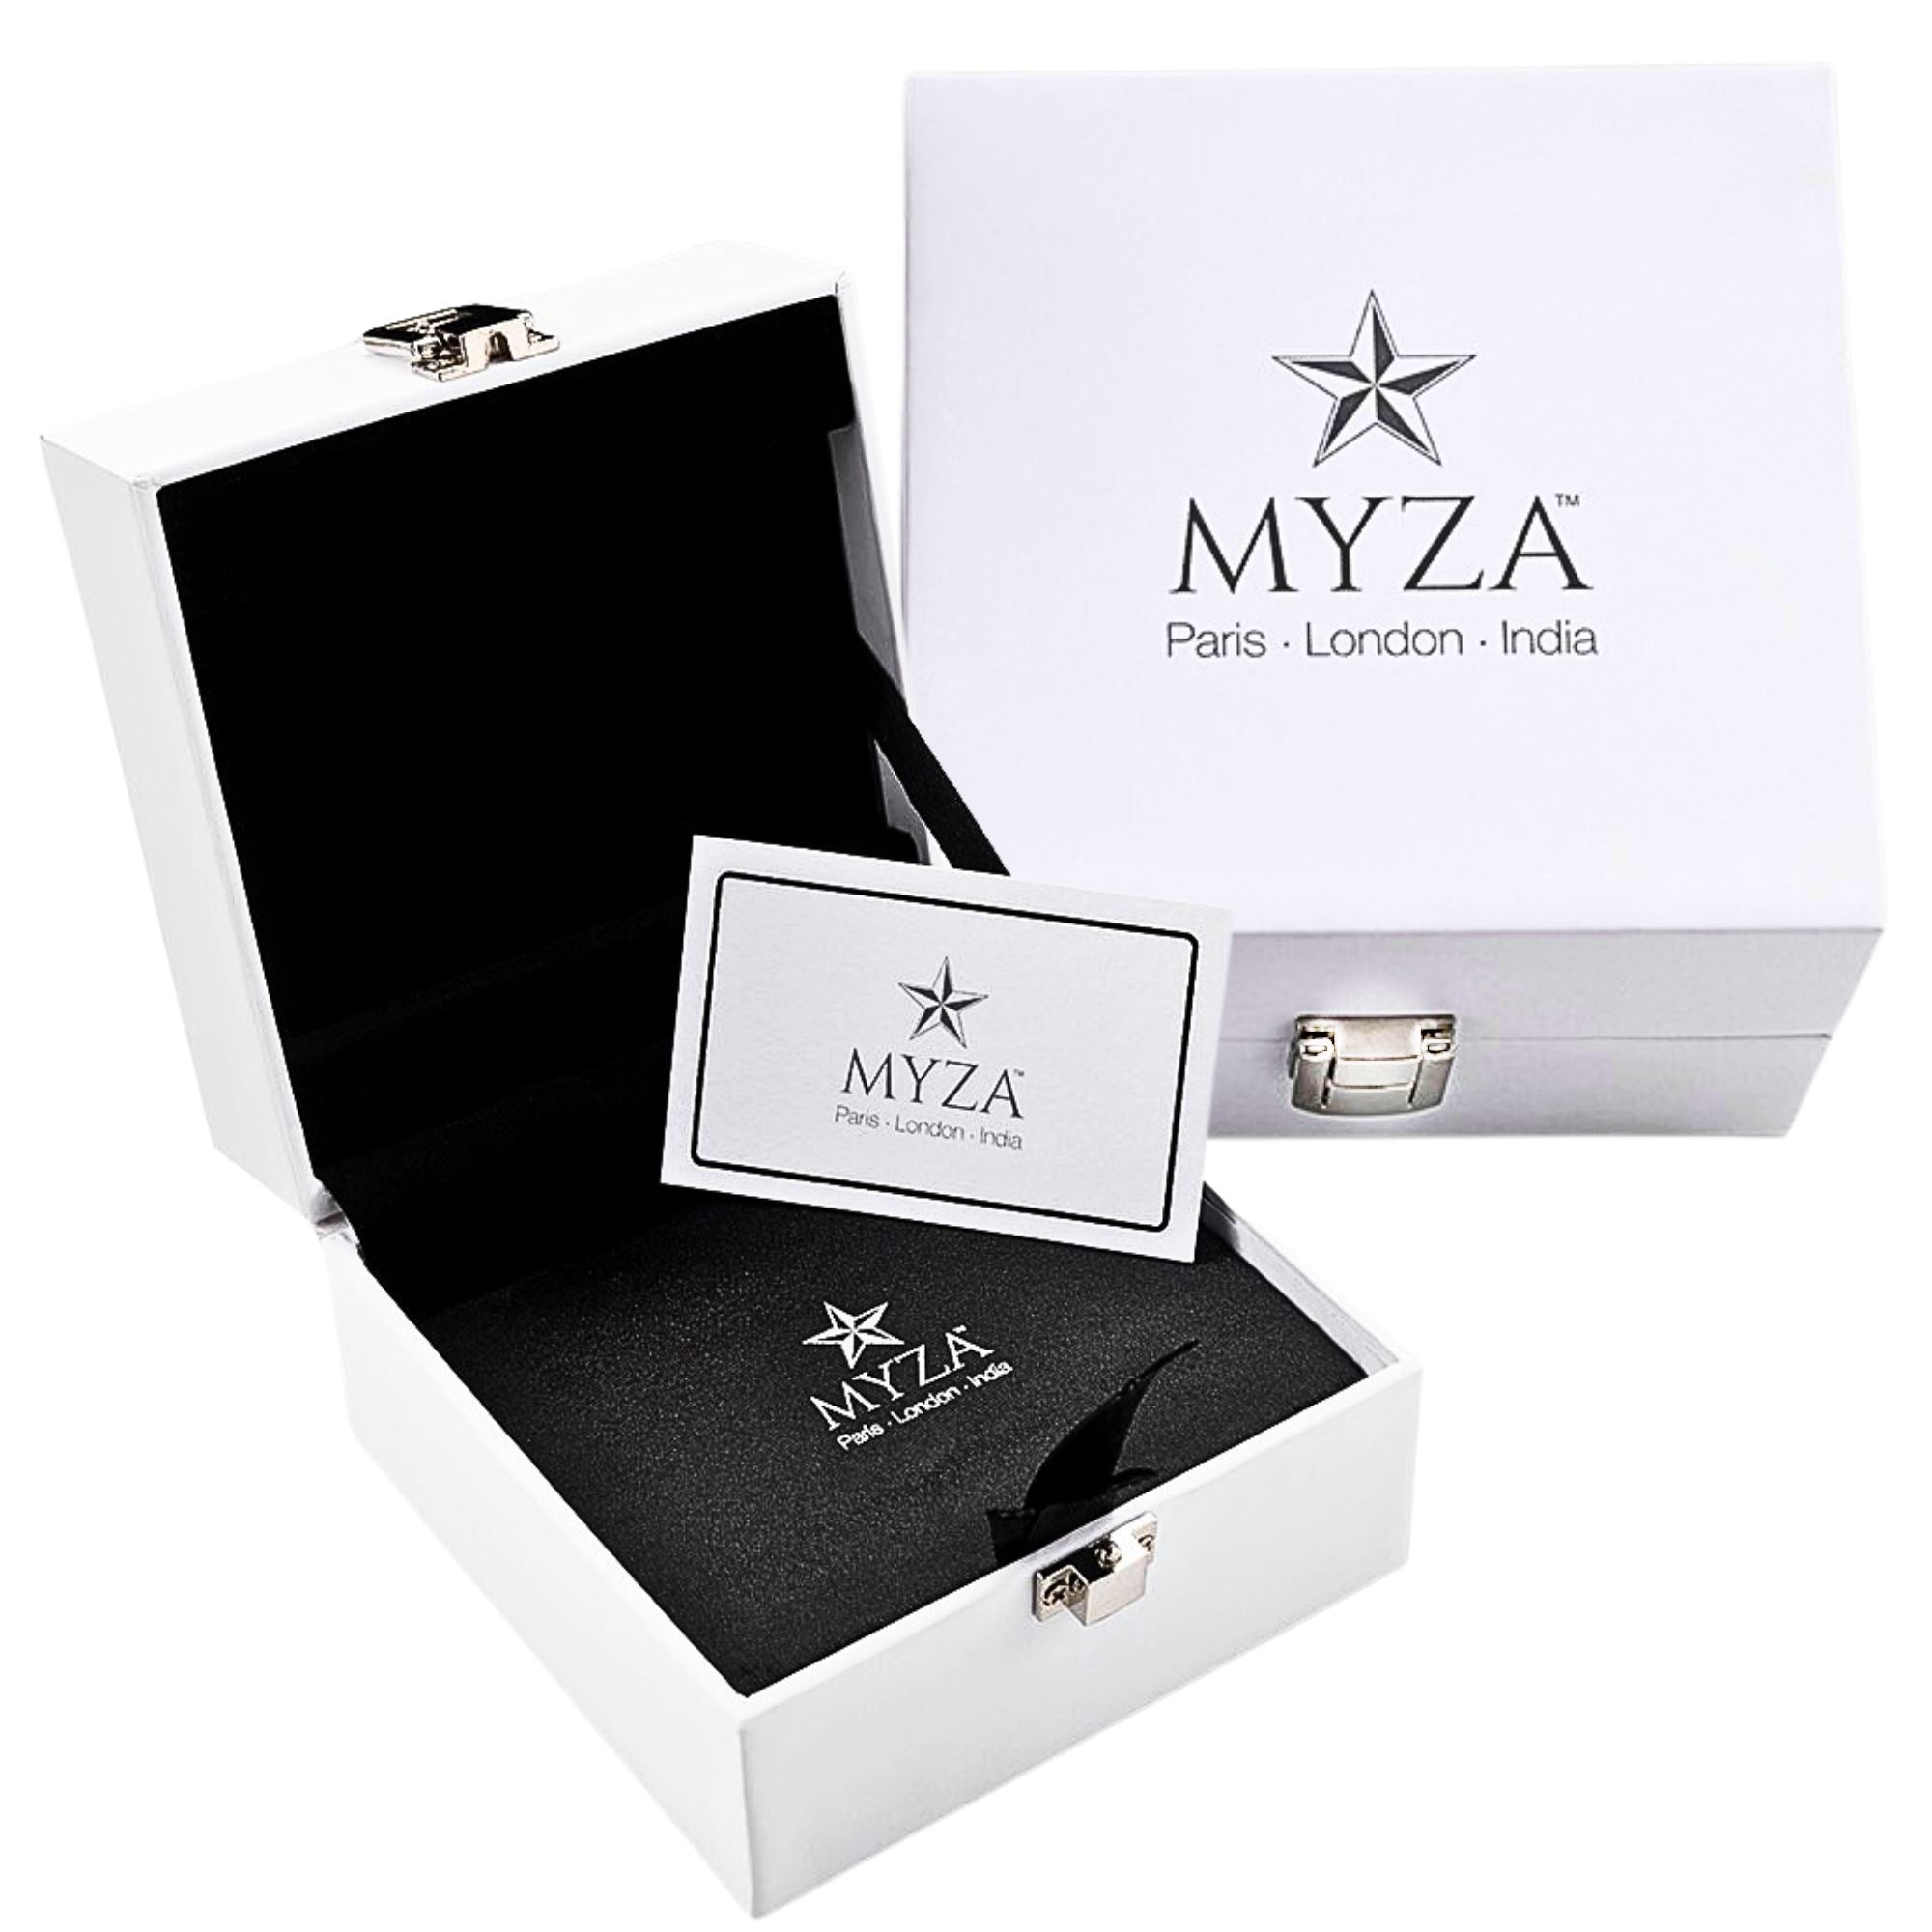 4-Carat MYZA Hallmark Gold Pendant - MYZA 